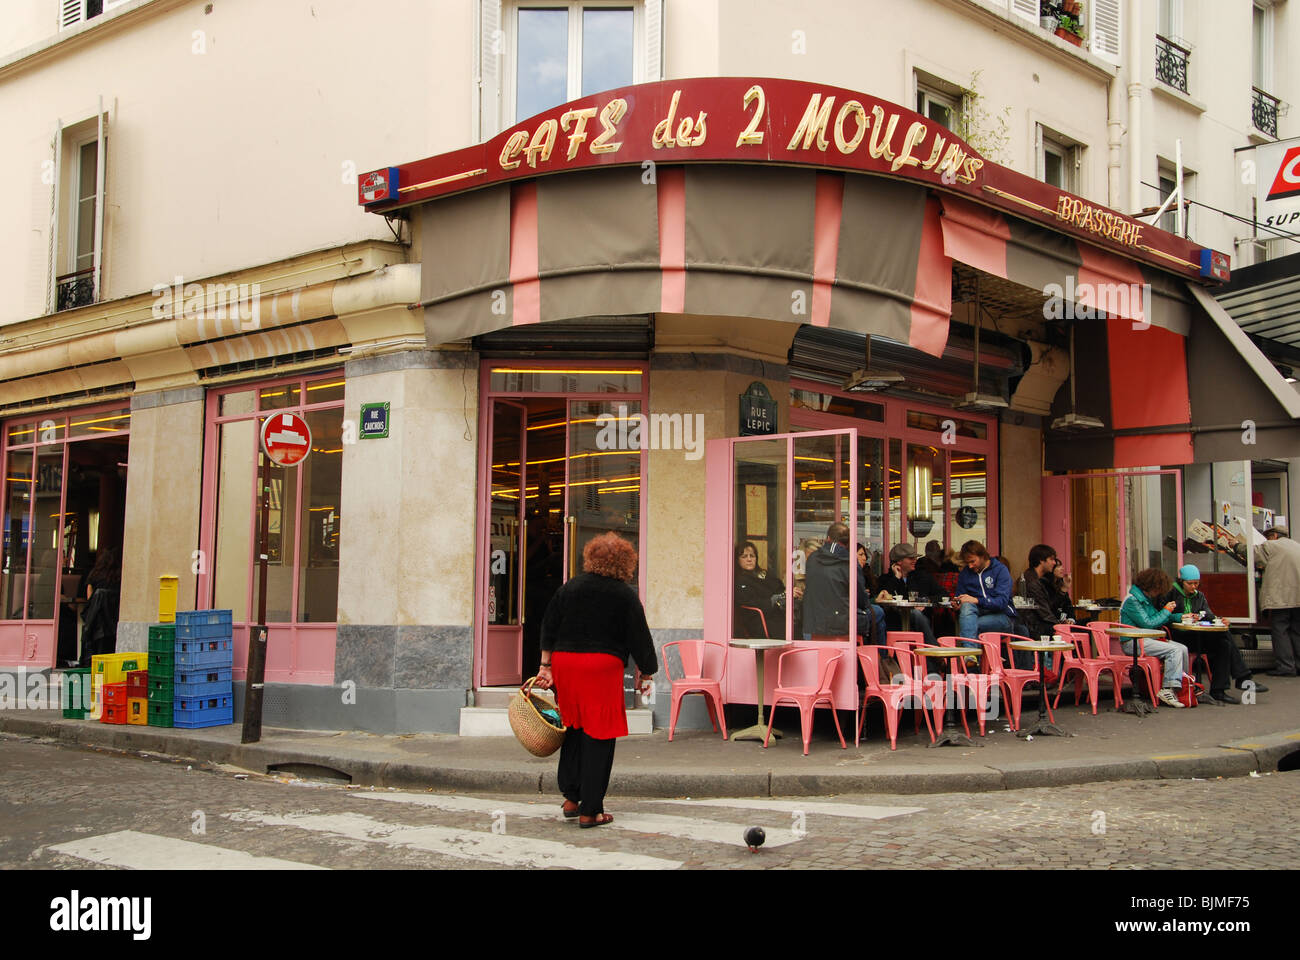 entrance of Cafe des 2 Moulins famous for Amelie film Paris France Stock Photo